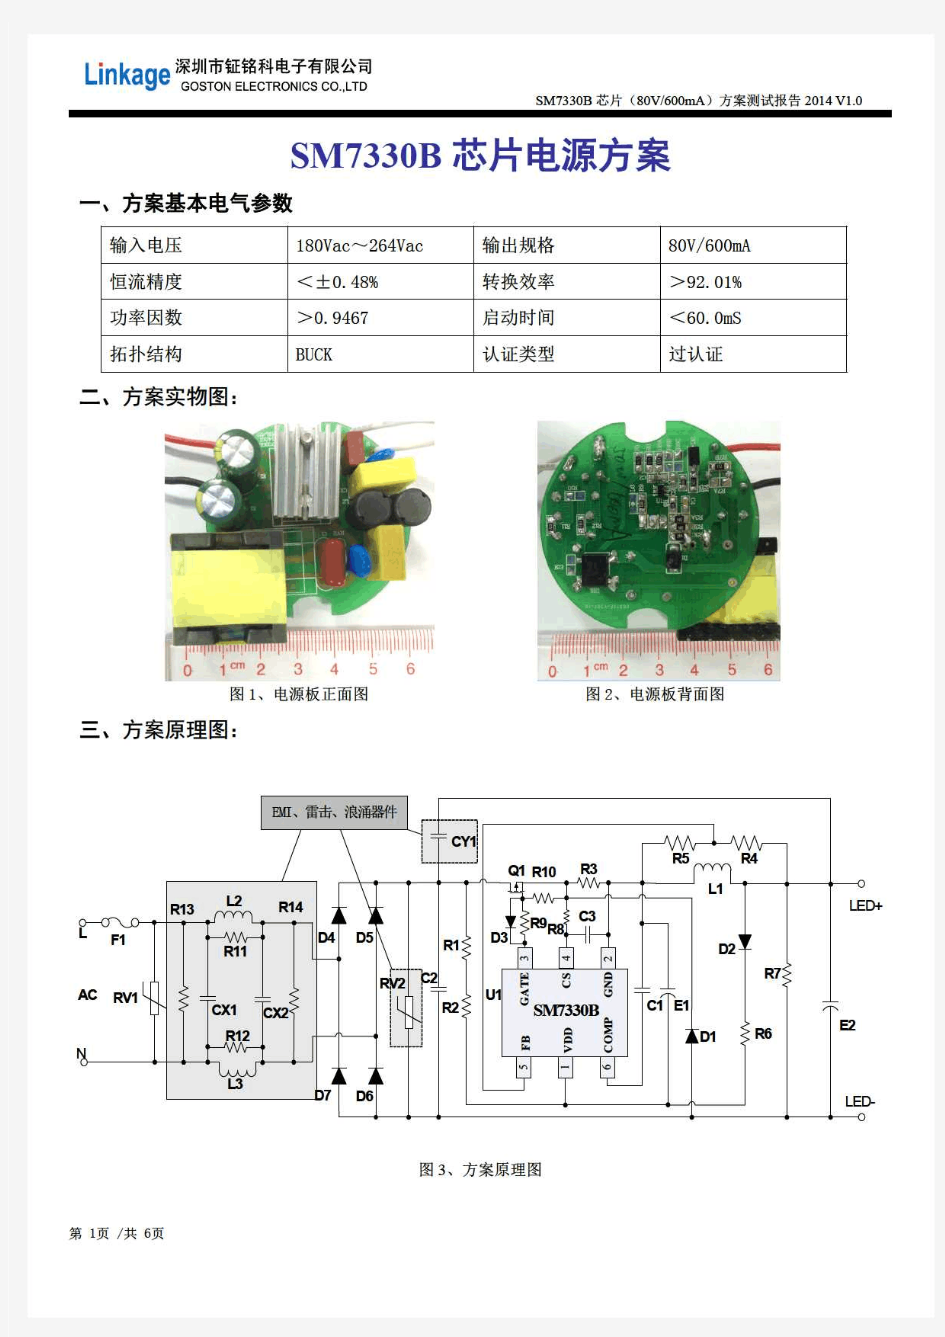 SM7330B600mA50W降压LED恒流驱动控制芯片方案